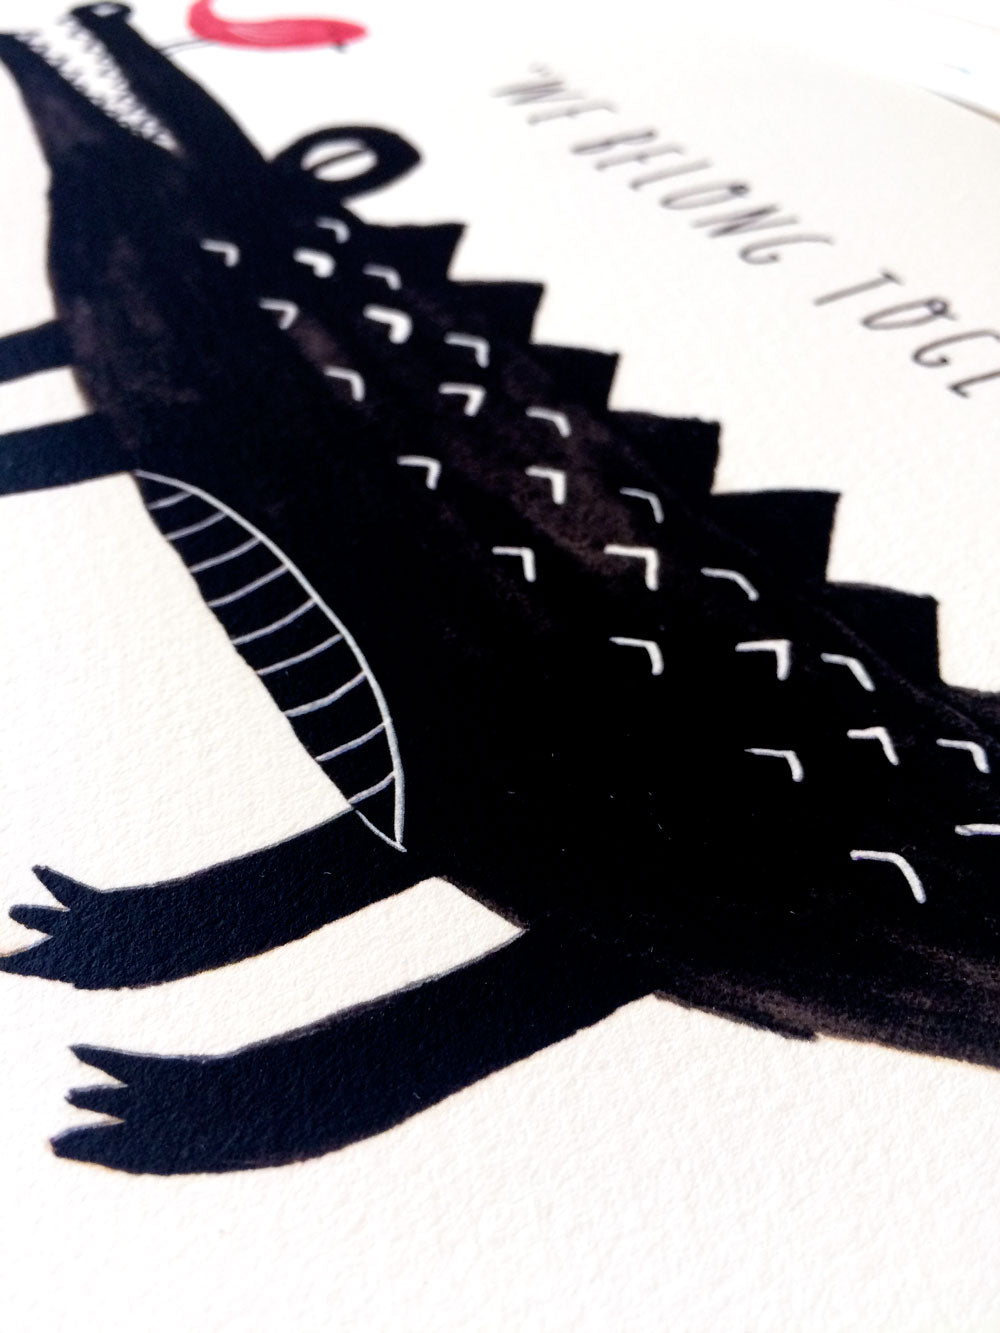 We Belong Together, Croc & Bird Giclee Art Print